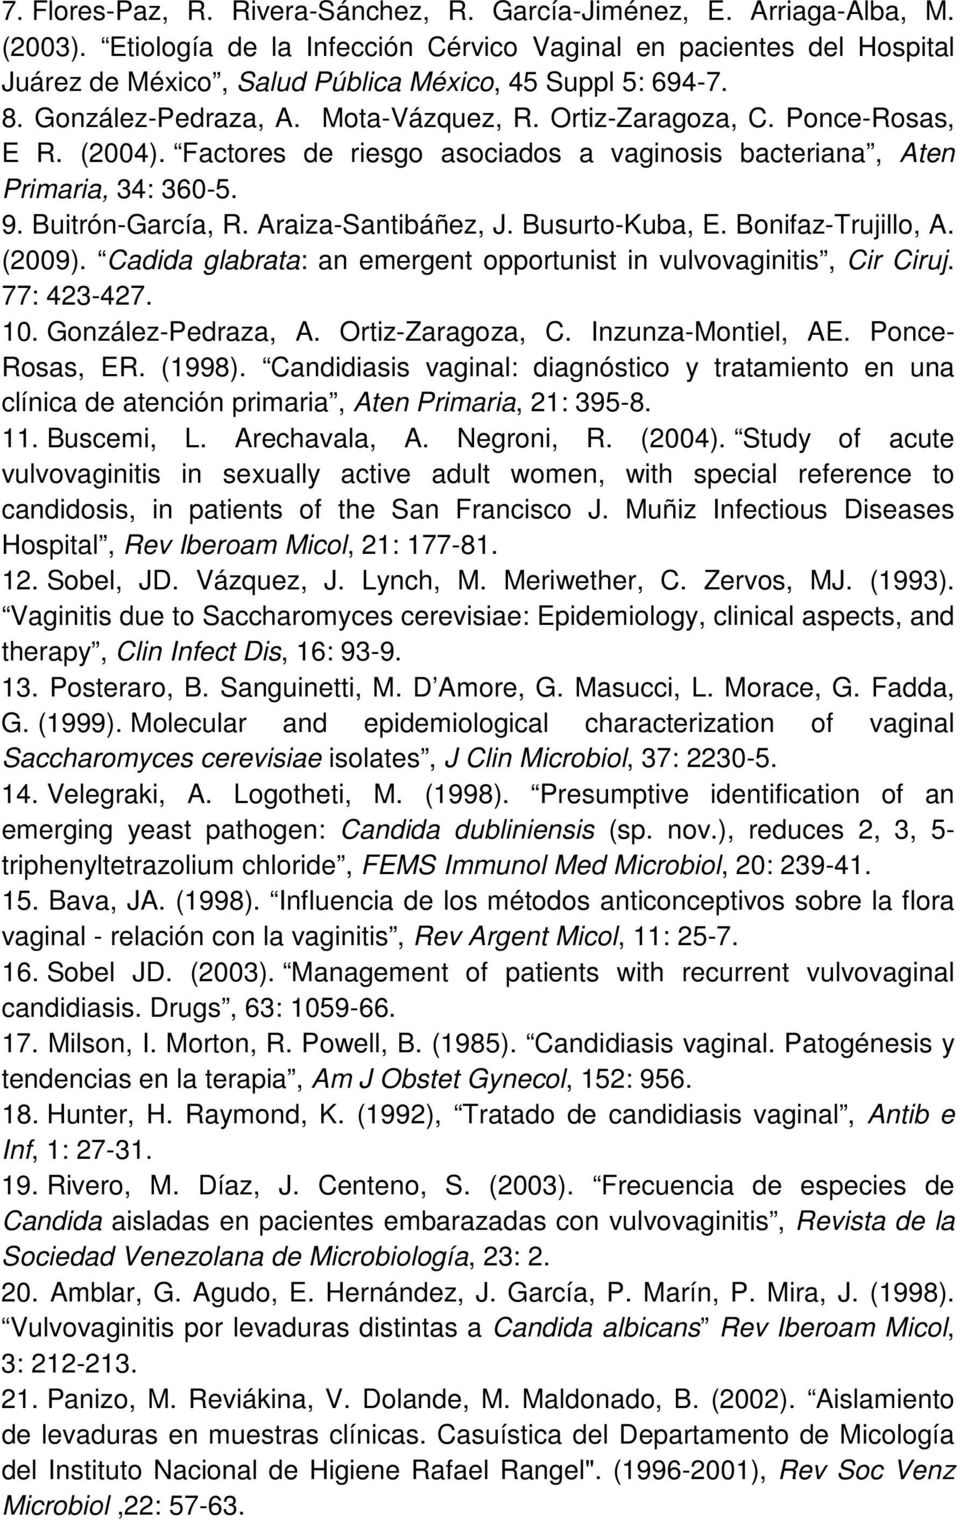 Ponce-Rosas, E R. (2004).. Factores de riesgo asociados a vaginosis bacteriana, Aten Primaria, 34: 360-5. 9. Buitrón-García, R. Araiza-Santibáñez, J. Busurto-Kuba, E. Bonifaz-Trujillo, A. (2009).